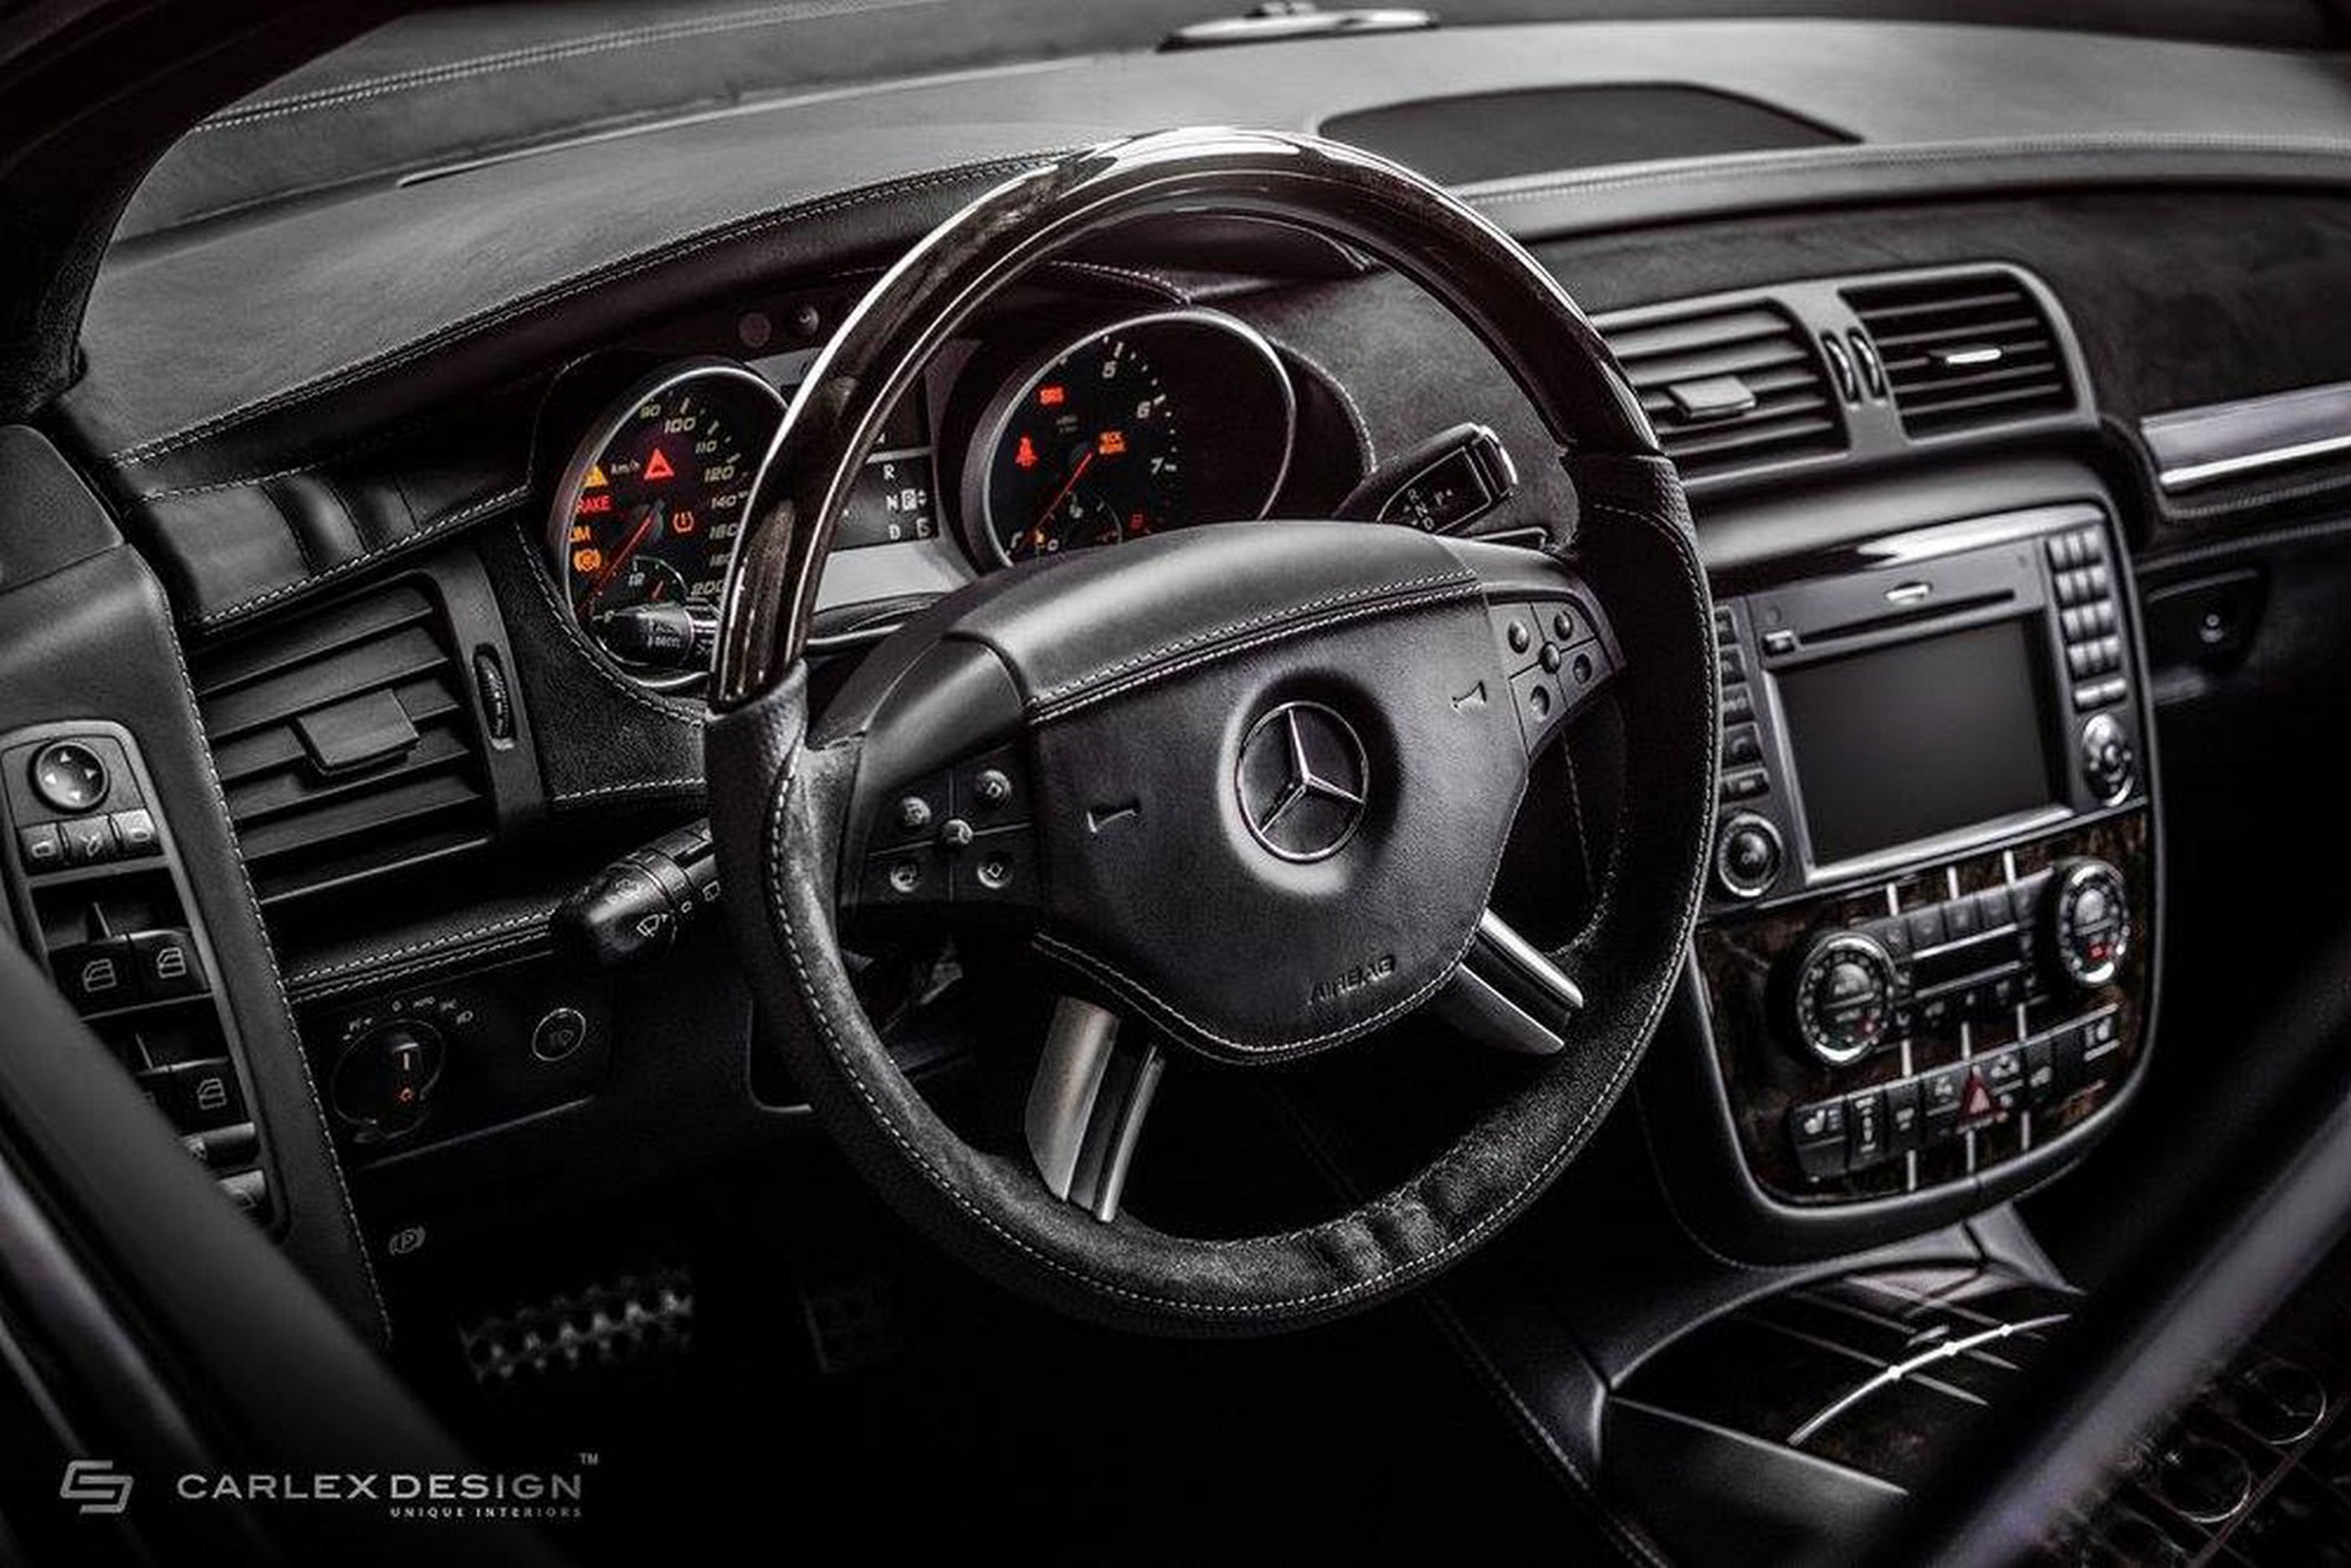 Carlex Design Merdeces-Benz R-Class